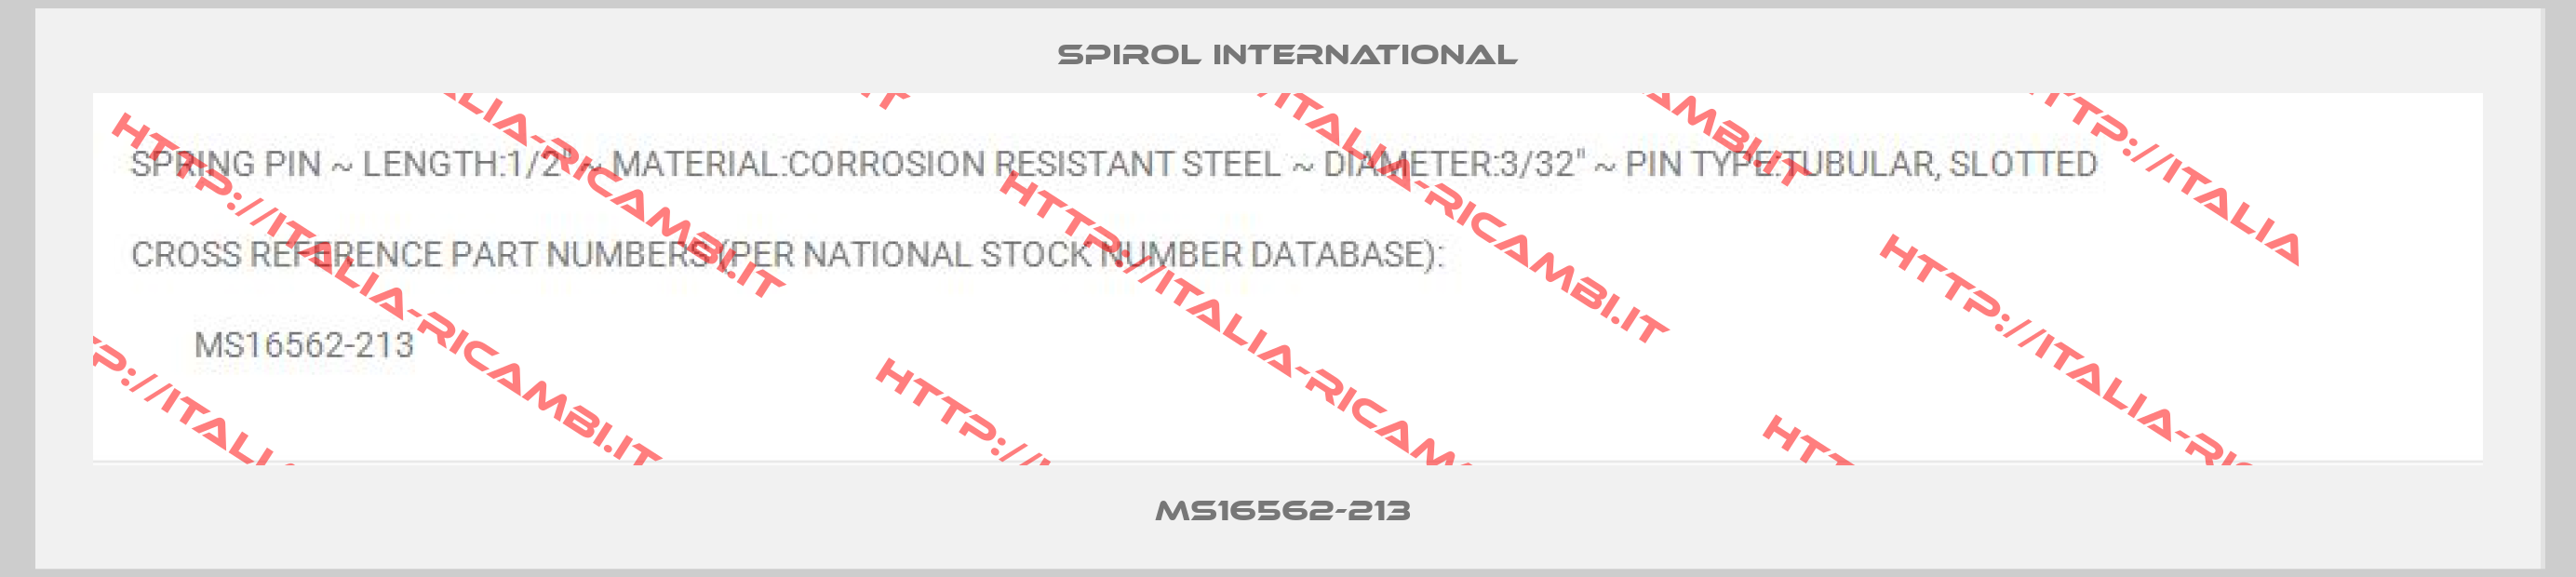 Spirol international-MS16562-213 